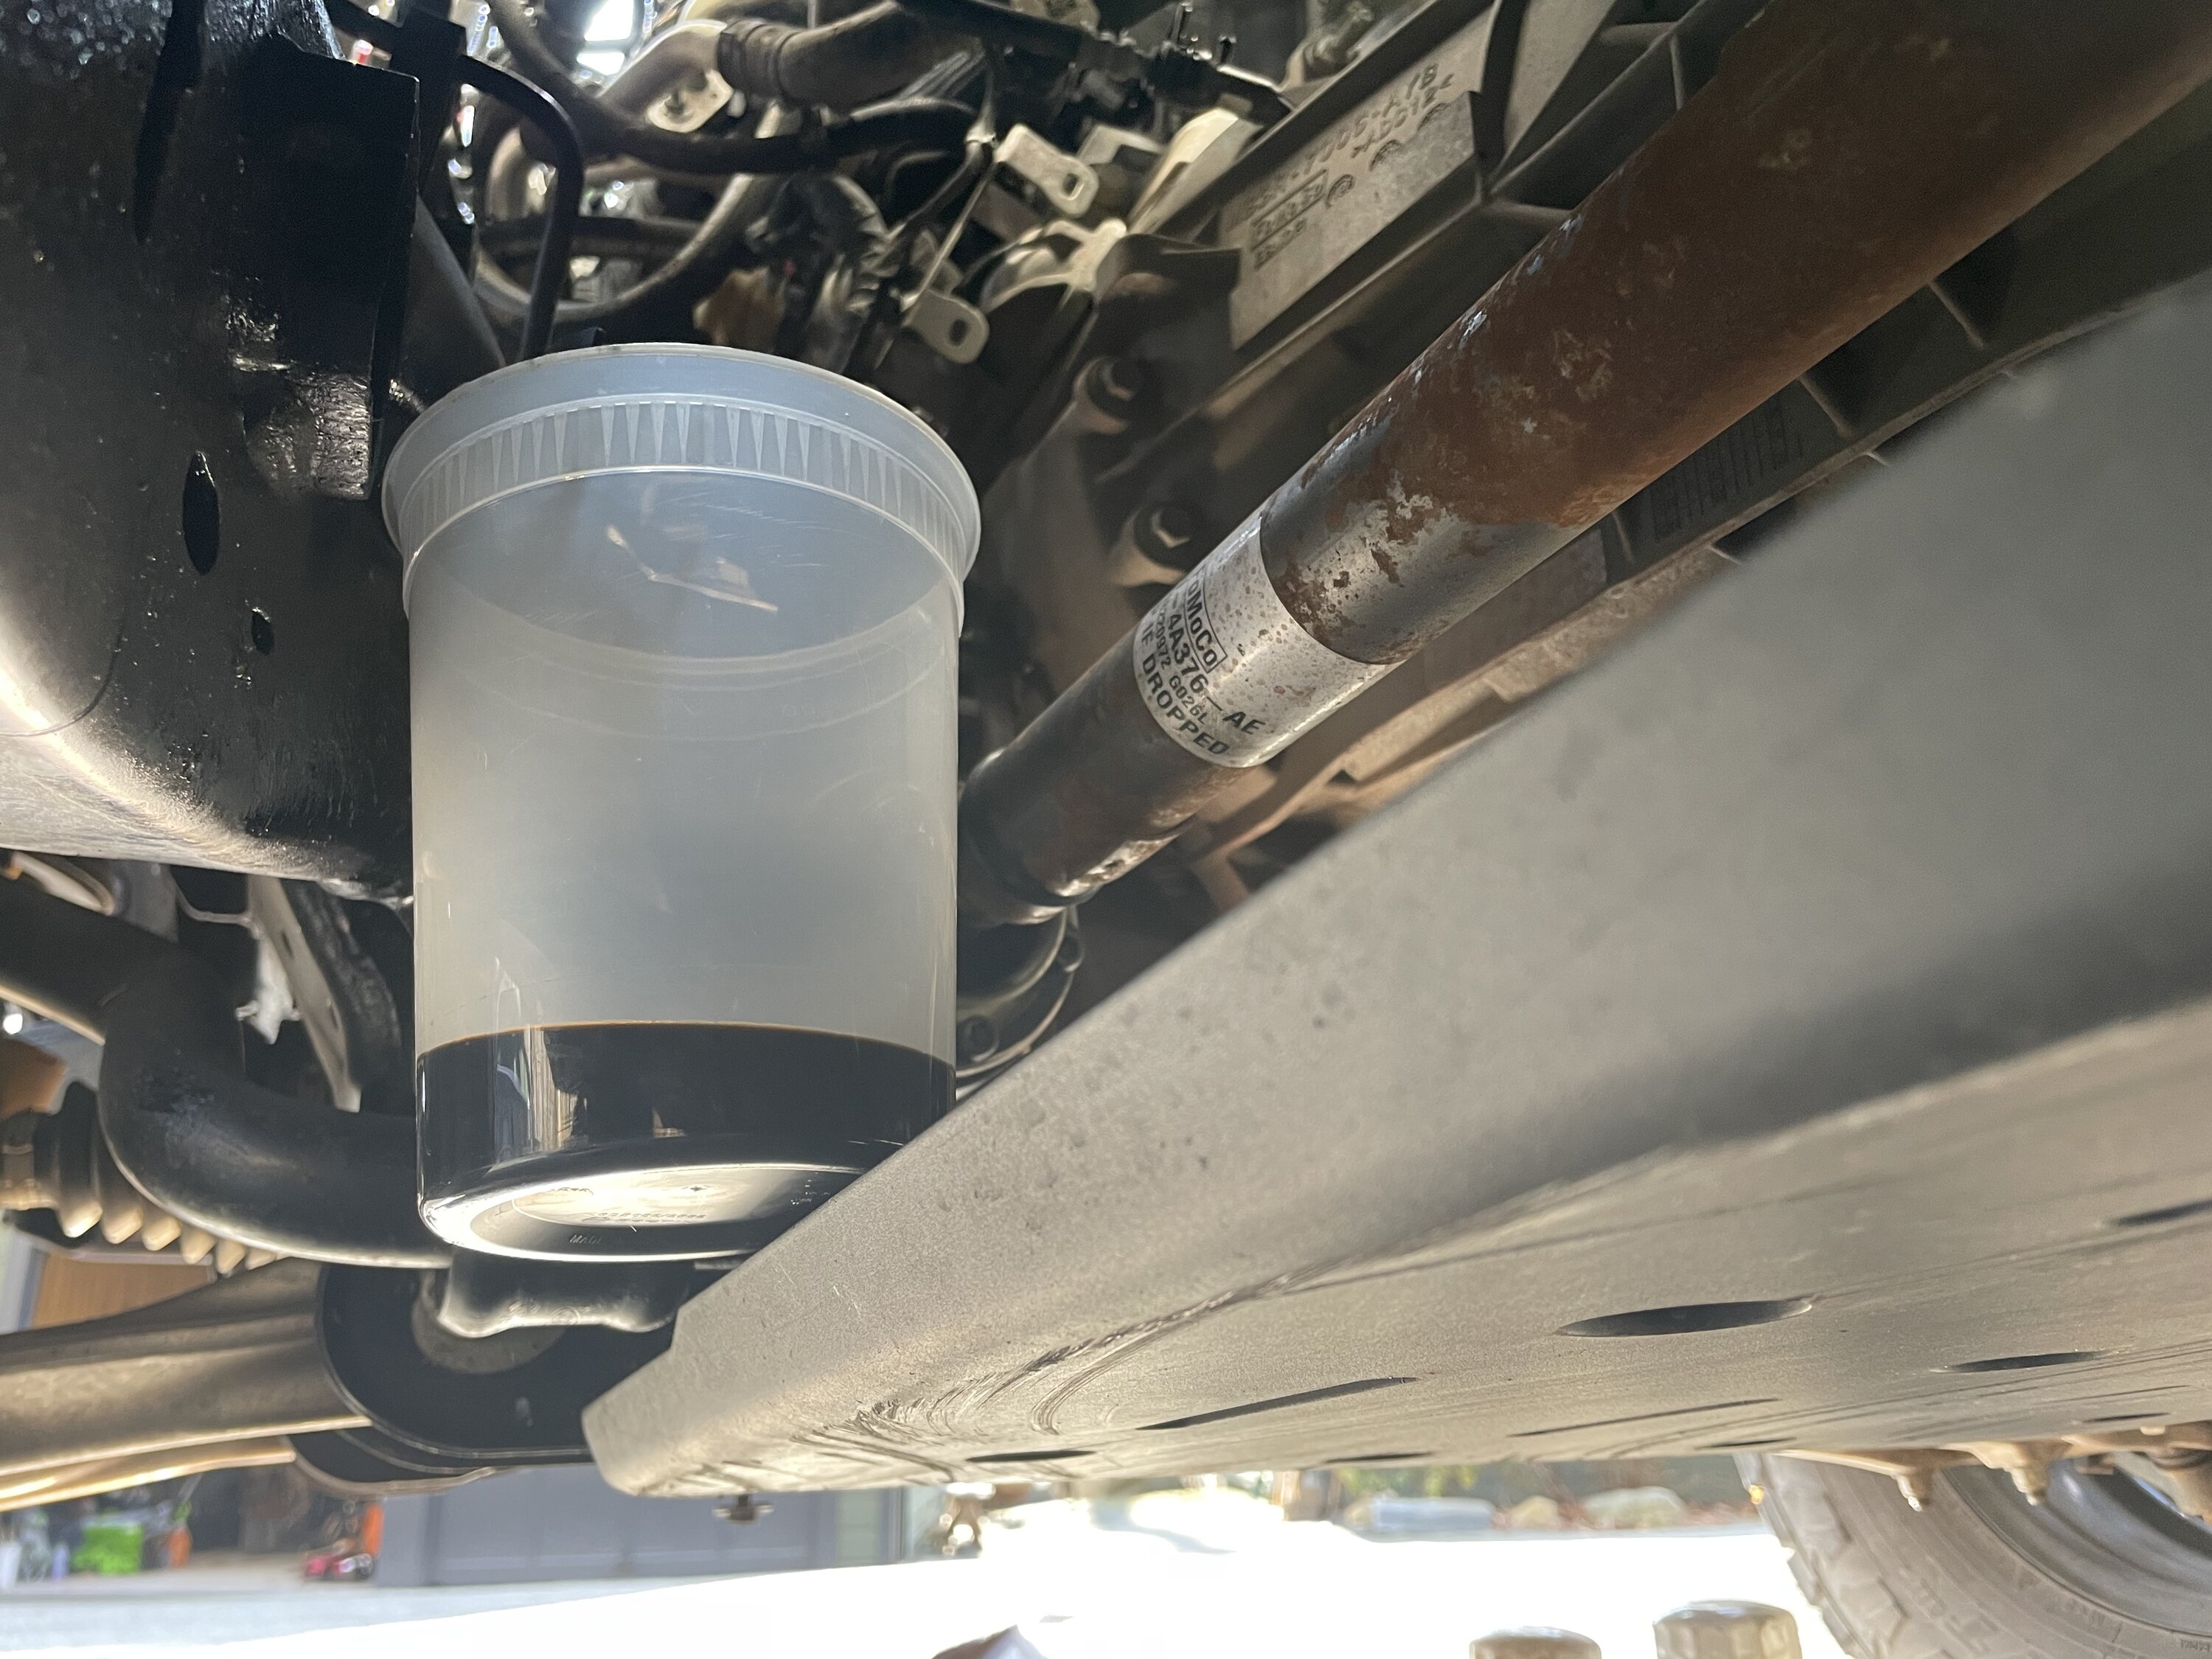 Ford Bronco Mabett 2.3 transmission skid install/review 6755415B-C0E2-42A0-B0BB-7942B5427DED